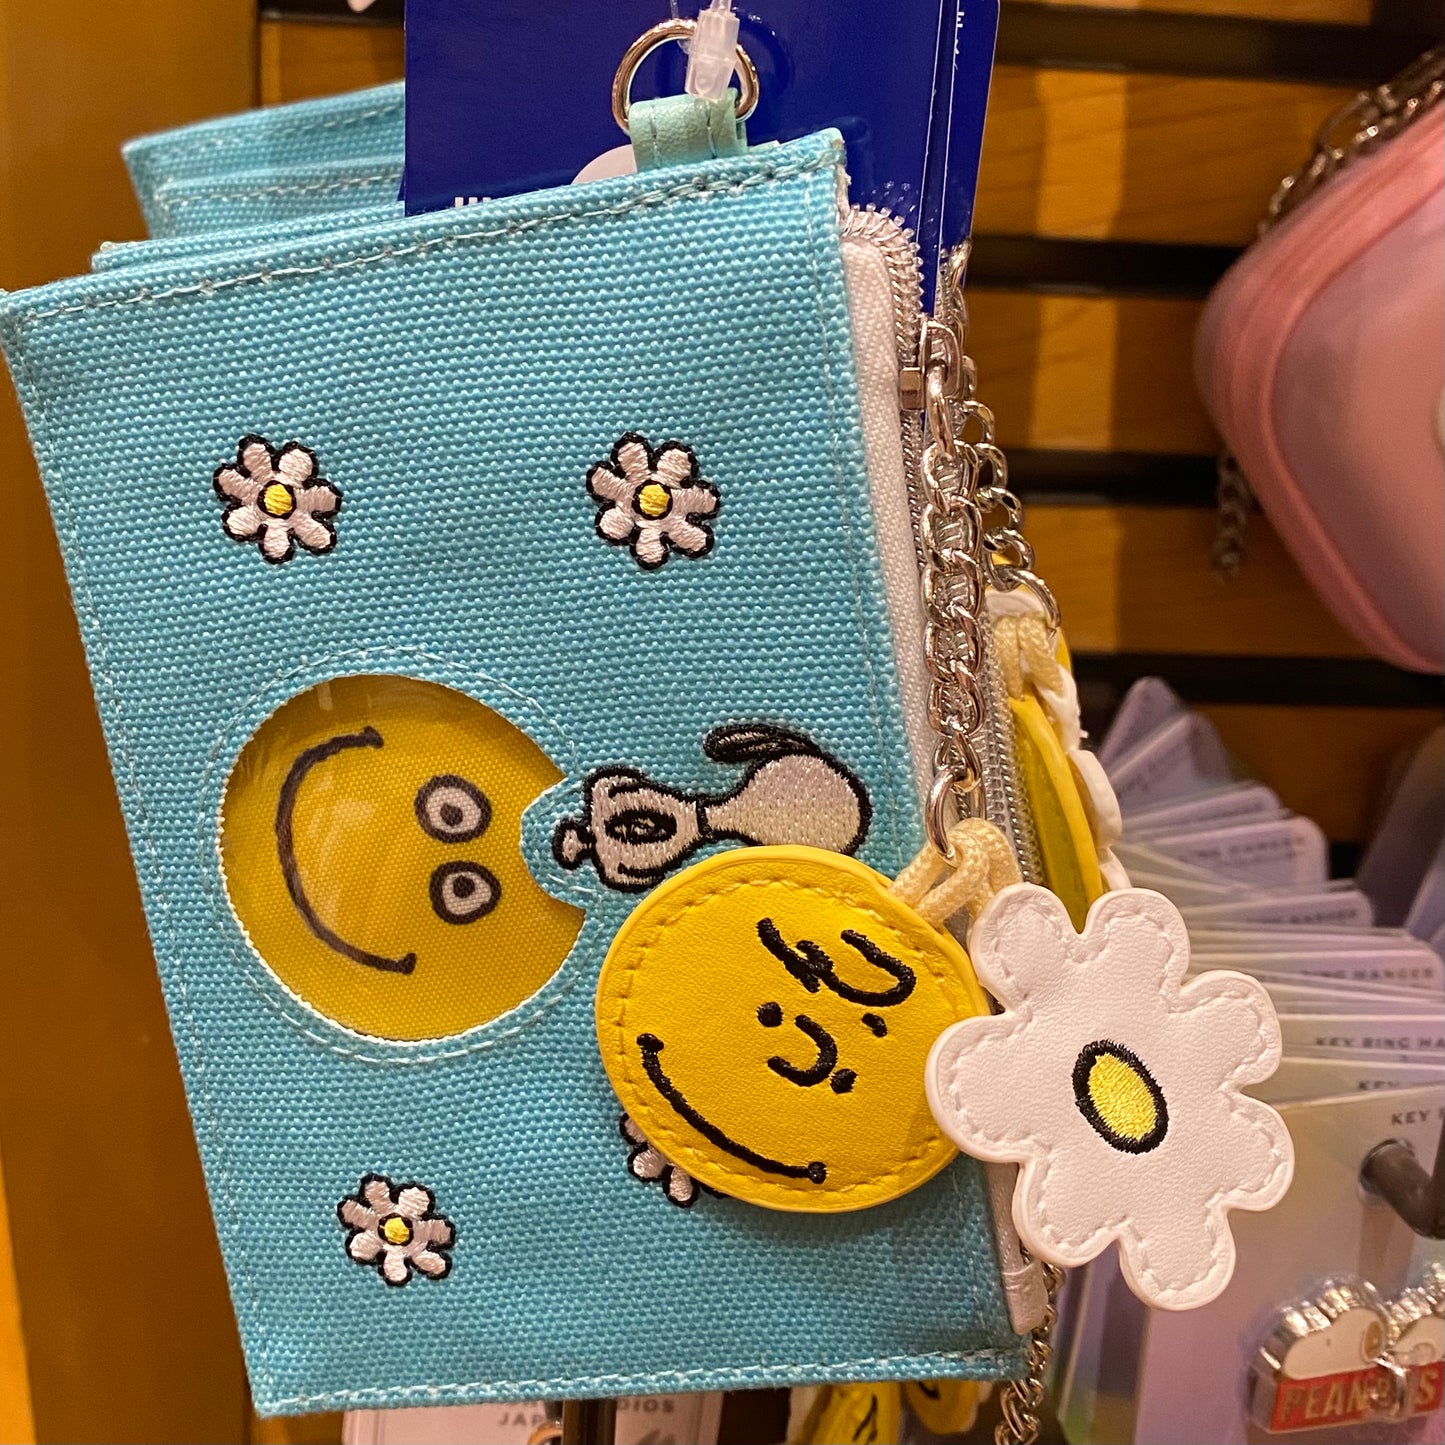 【現貨】USJ Snoopy 笑哈哈系列 - 卡套 / 環保袋